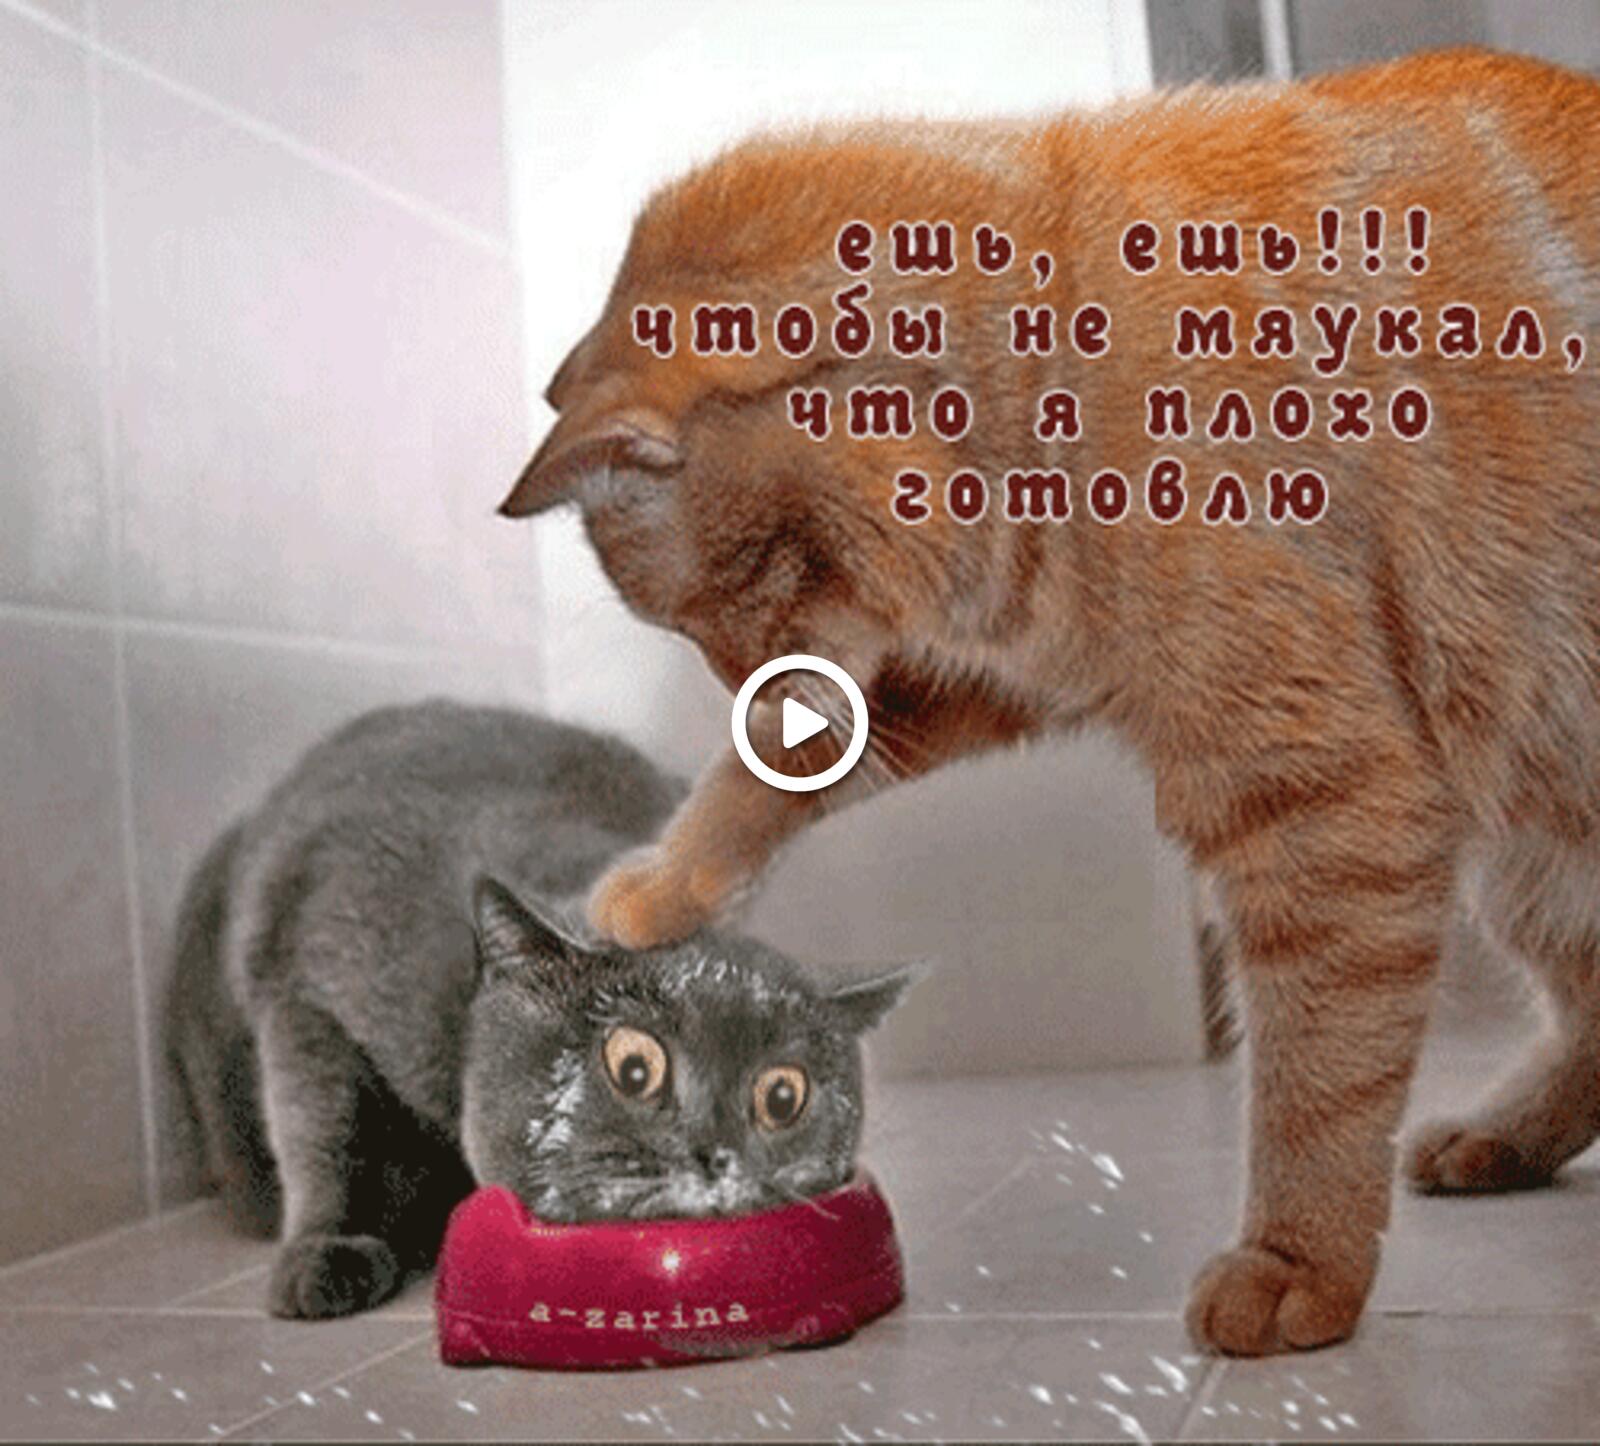 a bowl cat humor